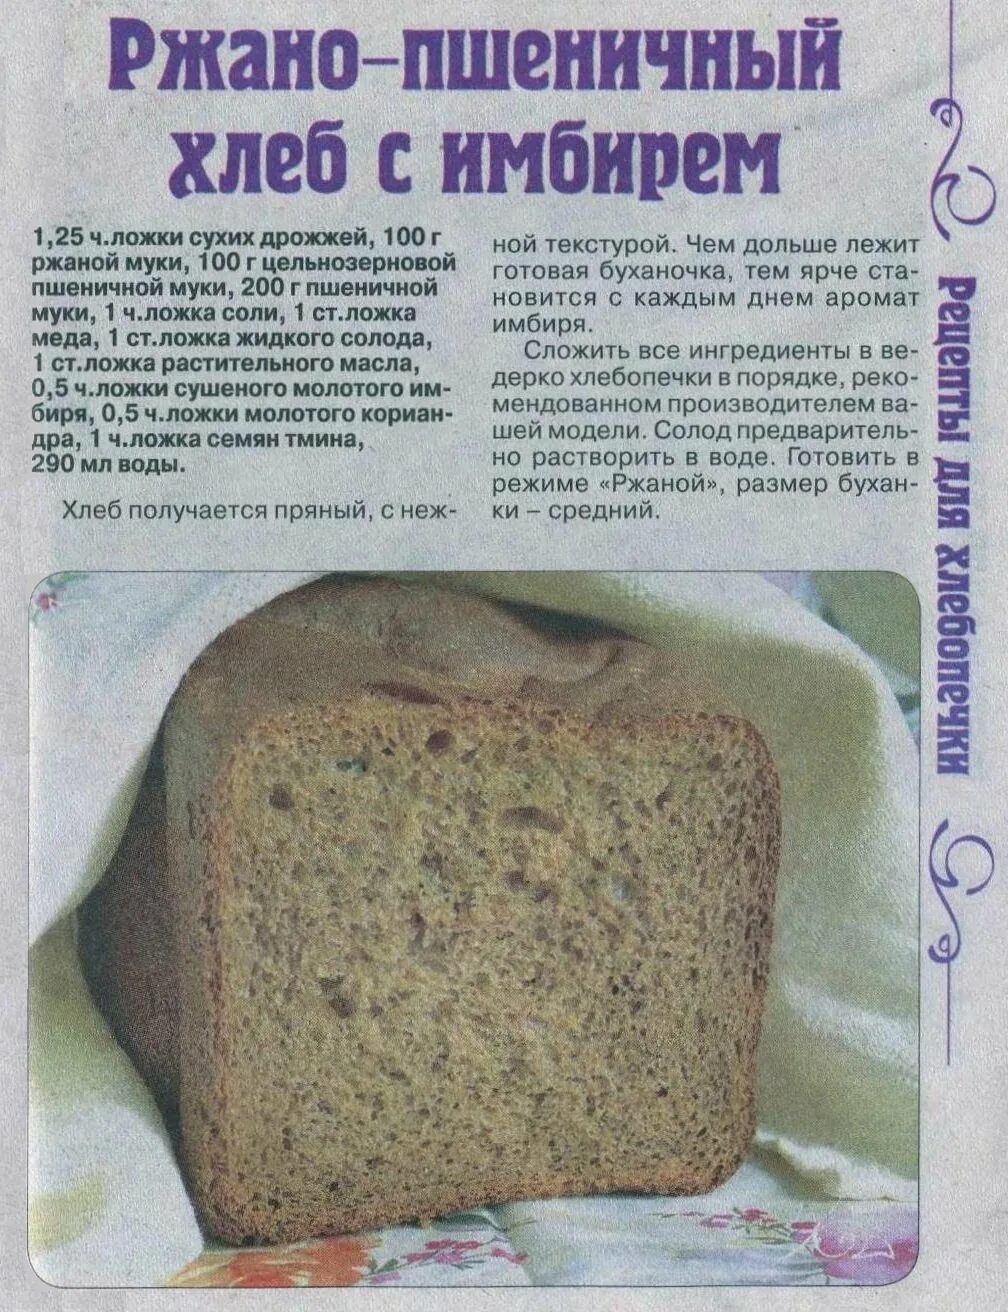 Рецепт черного хлеба на дрожжах. Рецепт хлеба в хлебопечке. Тесто на хлеб в хлебопечке. Домашний хлеб в хлебопечке. Рецептура ржаного хлеба.